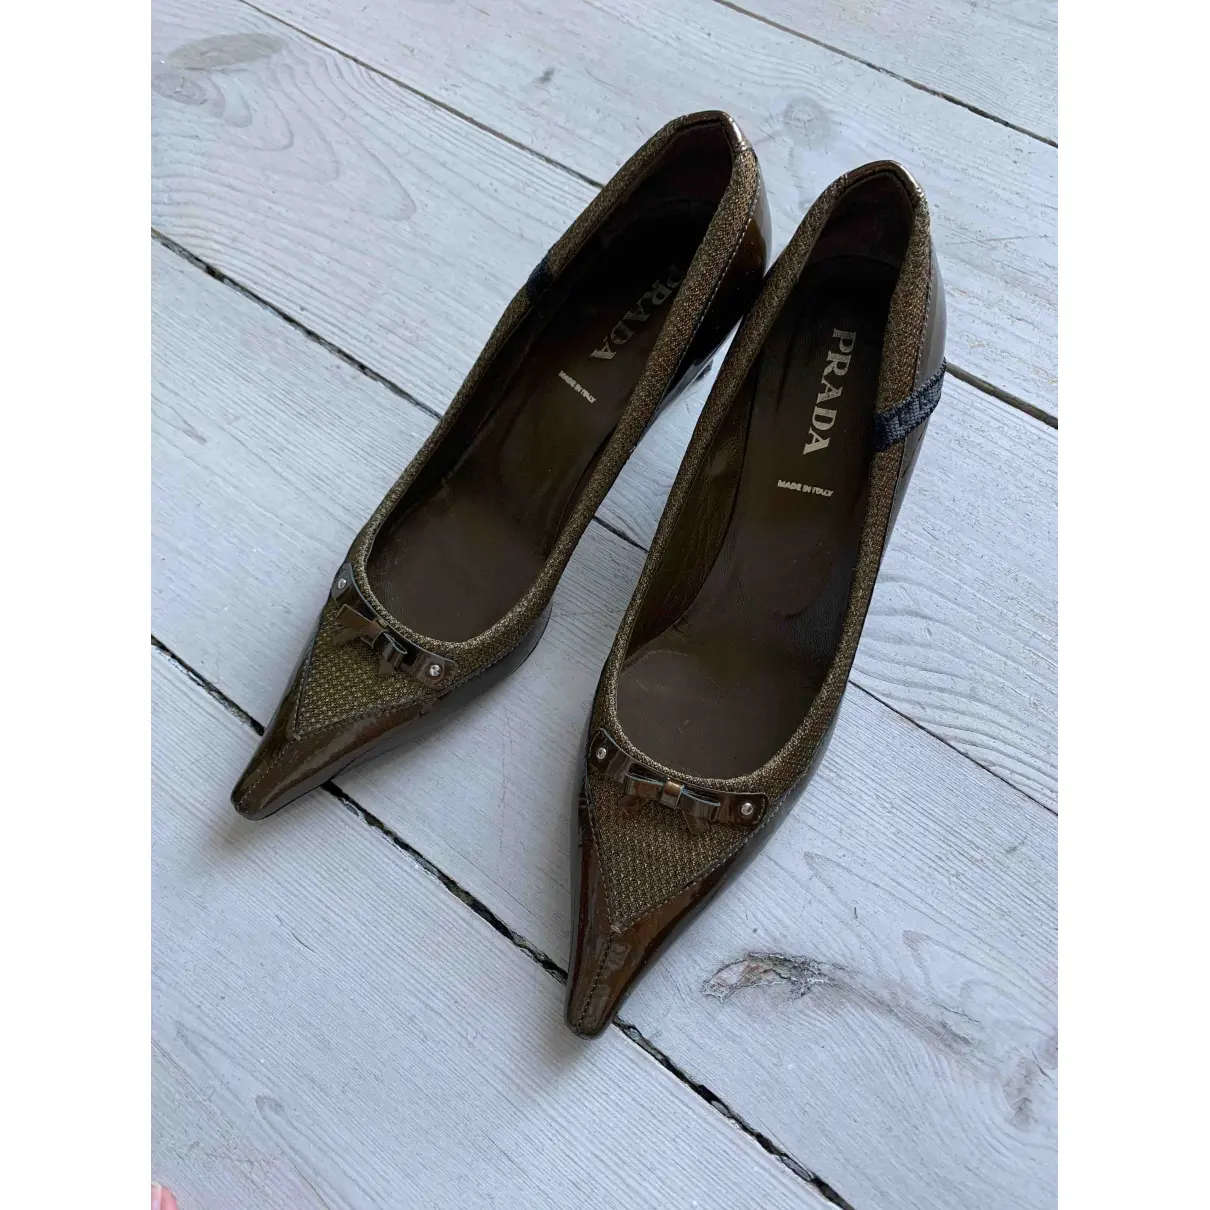 Buy Prada Patent leather heels online - Vintage